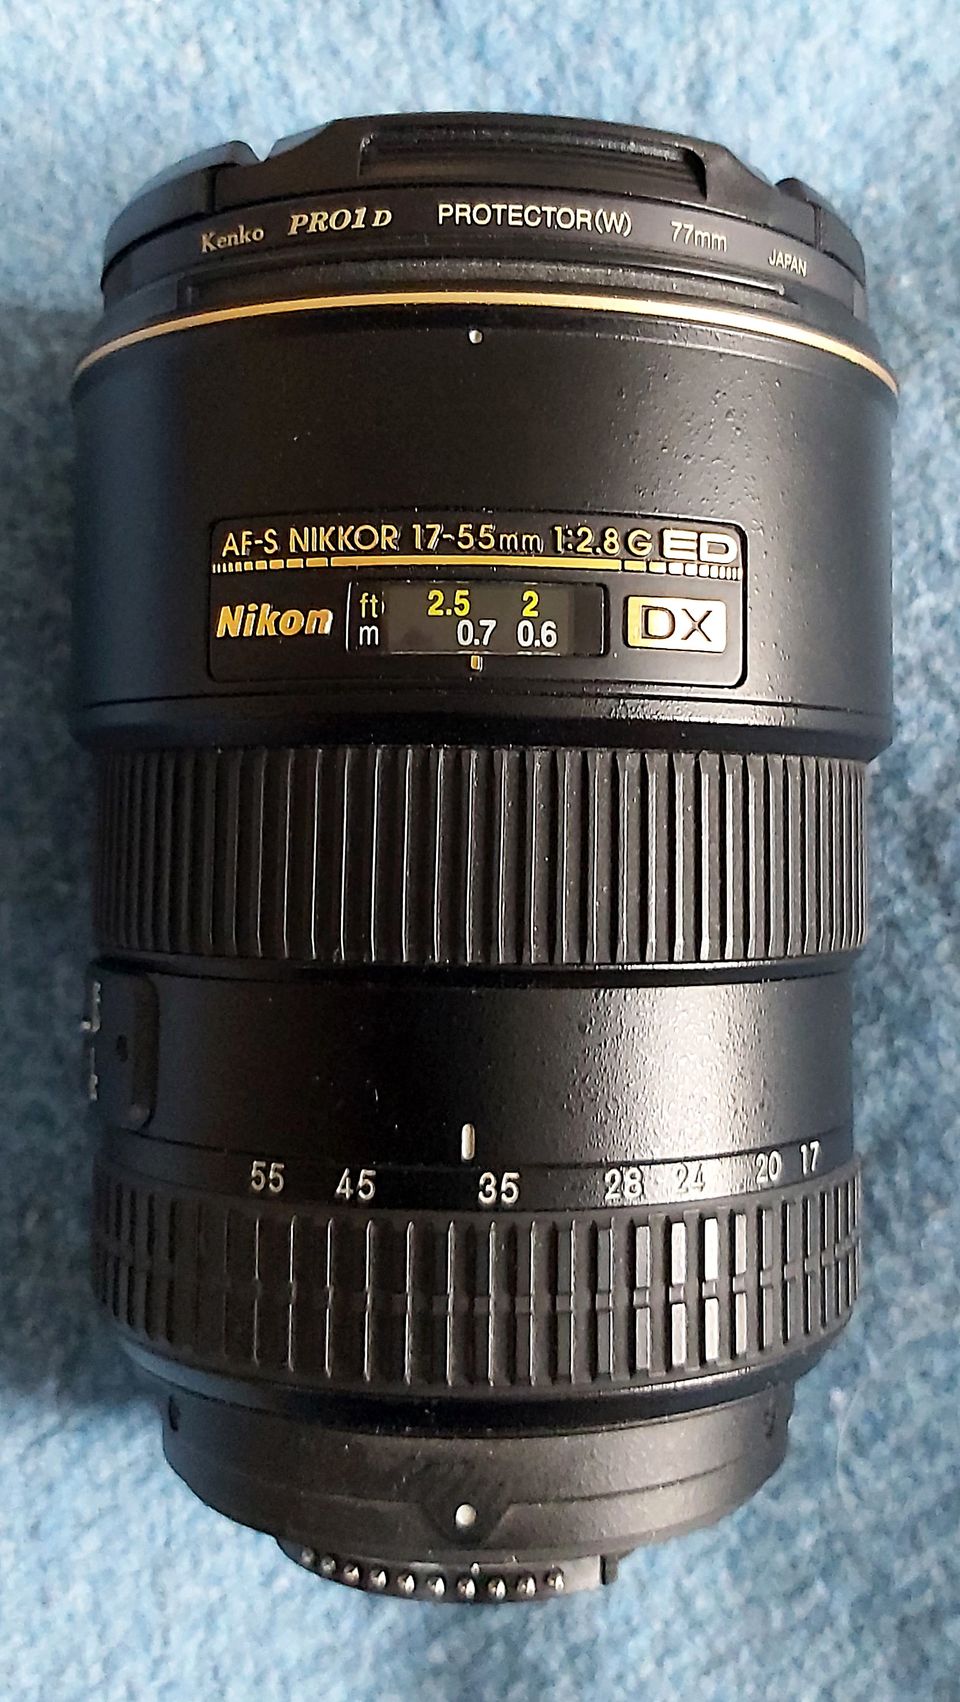 Nikon Nikkor 17-55mm 1:2.8G ED DX